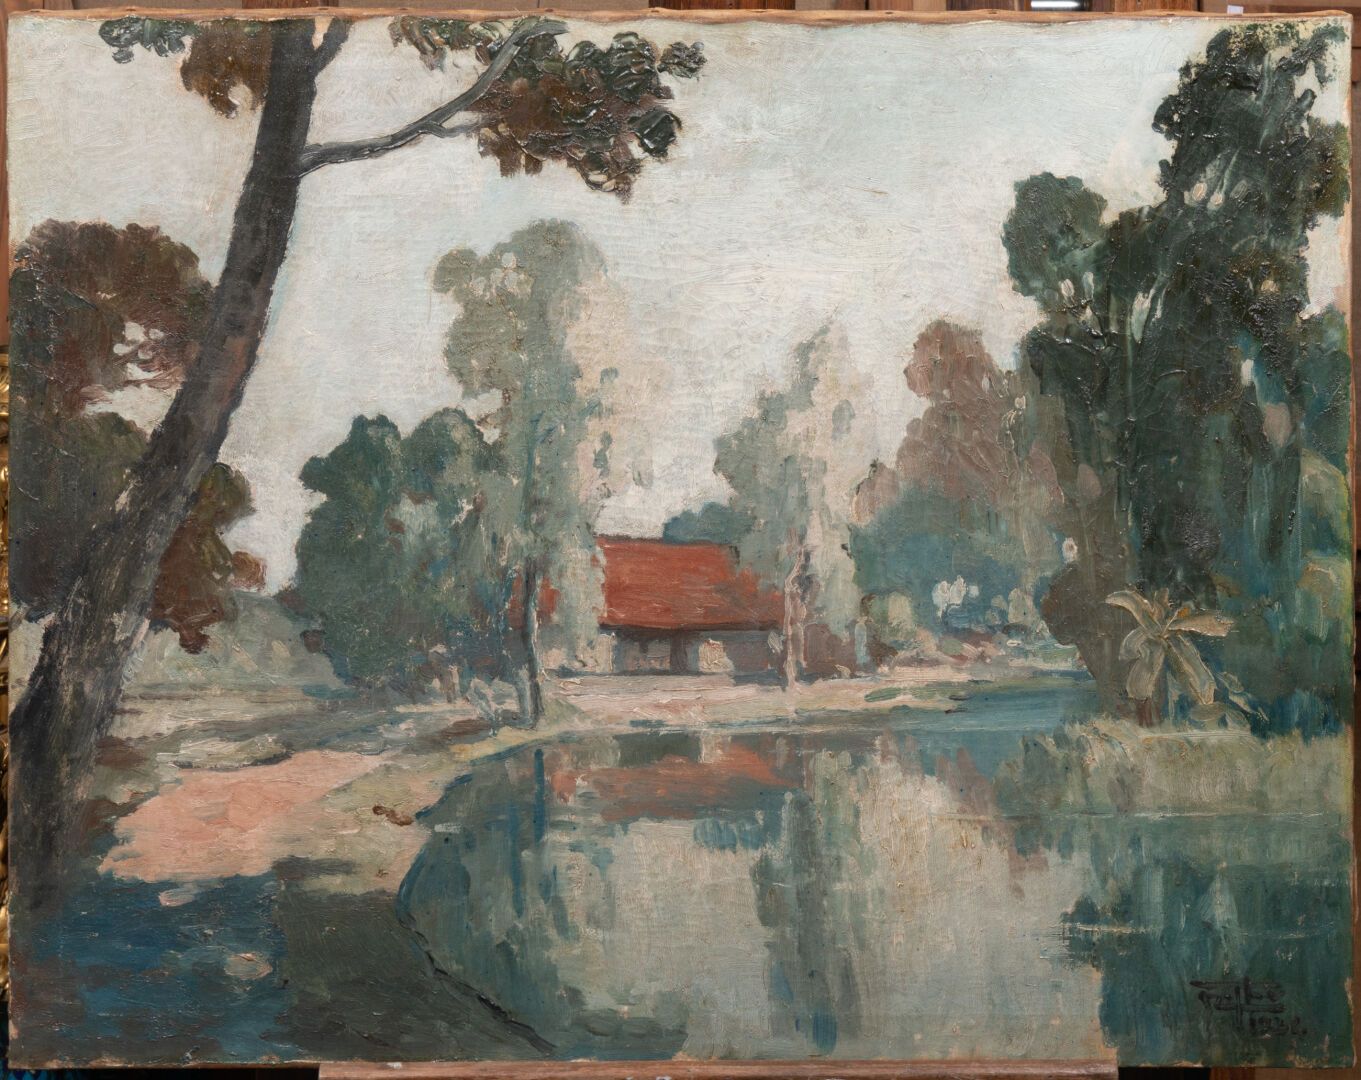 Mai Thu NGUYEN (XXe siècle) 景观中的房子
布面油画
右下方有签名，日期为1934年 
H.55厘米 - 宽70厘米